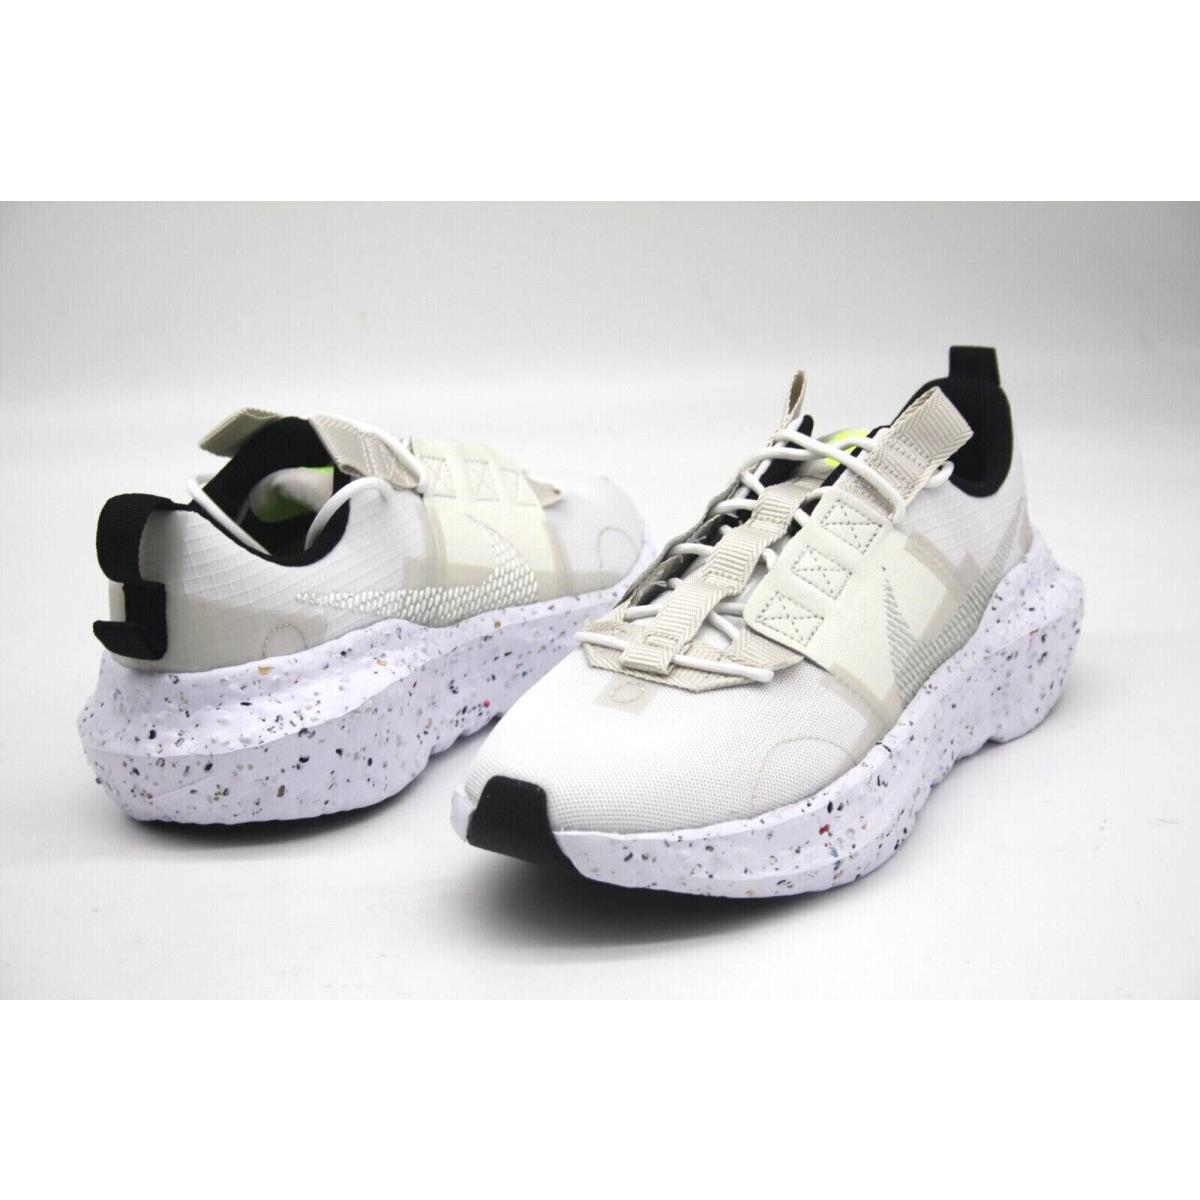 Nike shoes Crater Impact - WHITE/LIGHT BONE-SAIL-VOLT 3